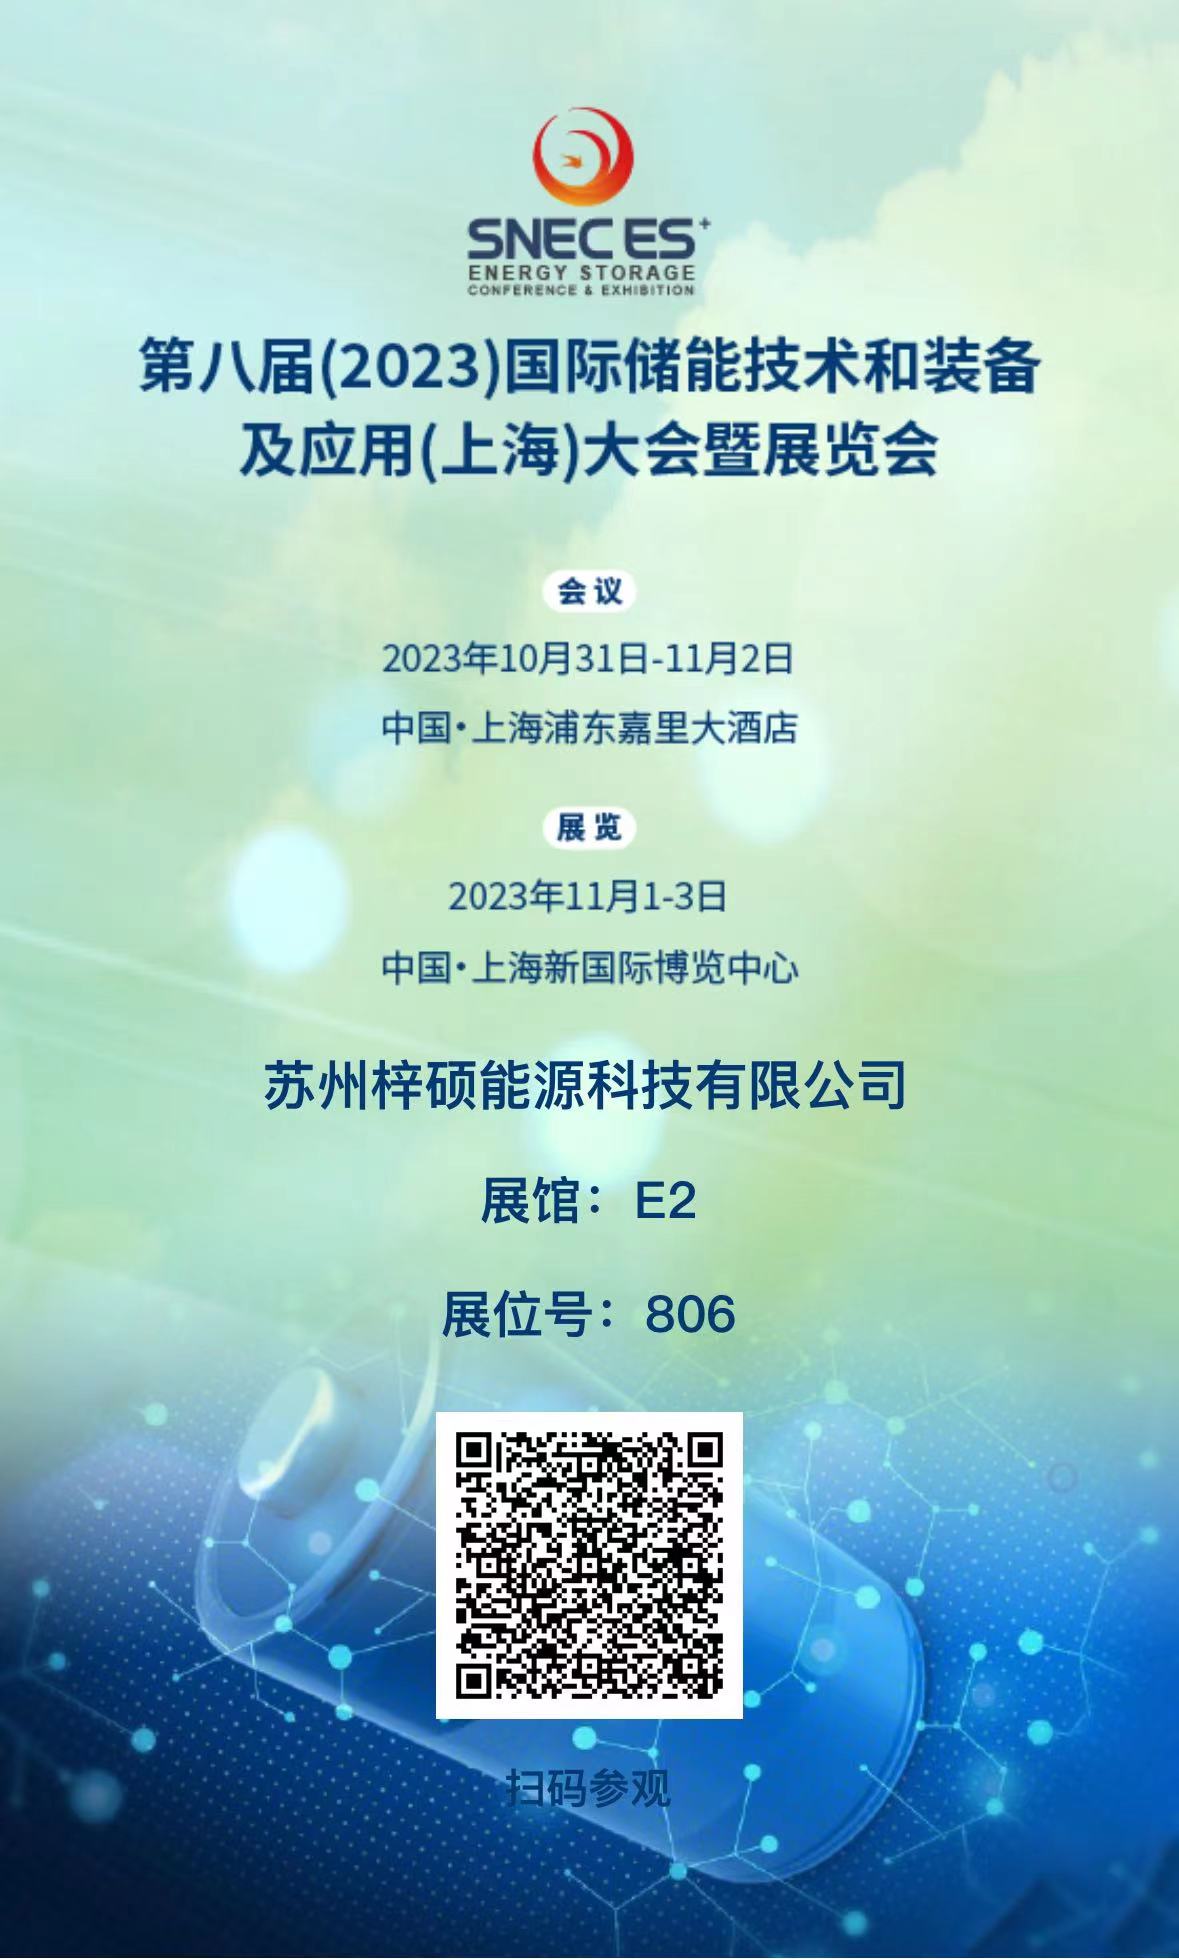 亚洲必赢国际437app将参加于2023年11月1日至3日在上海新国际博览中心举办的第八届国际储能技术和装备及应用大会暨展览会